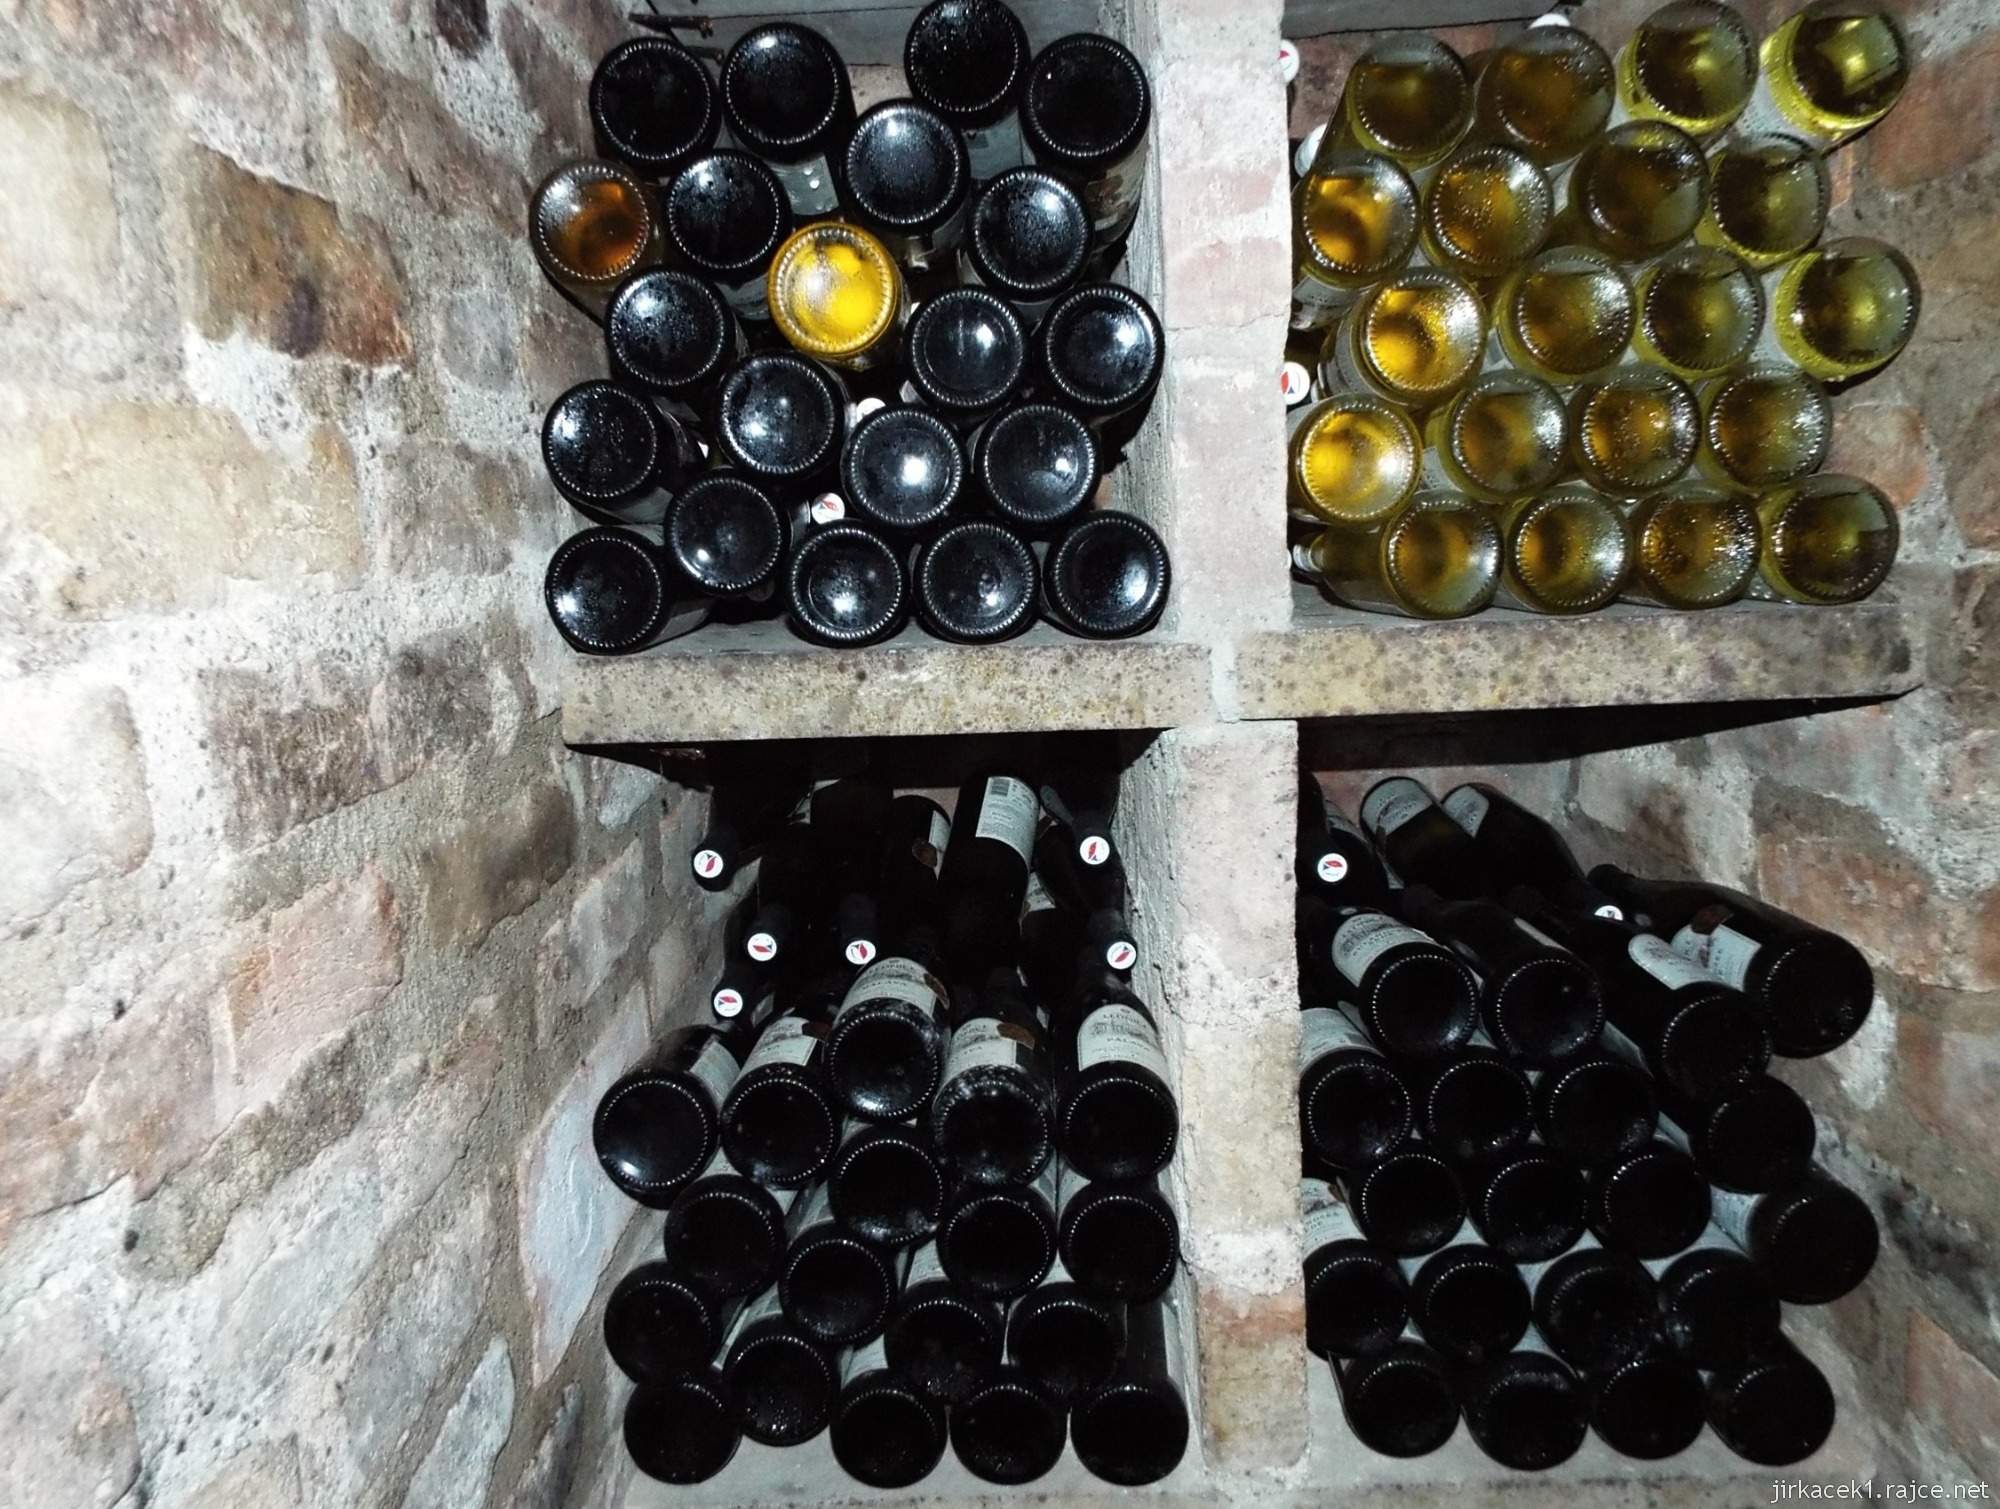 Valtické podzemí 16 - archívní sklep vinařství Valtického podzemí